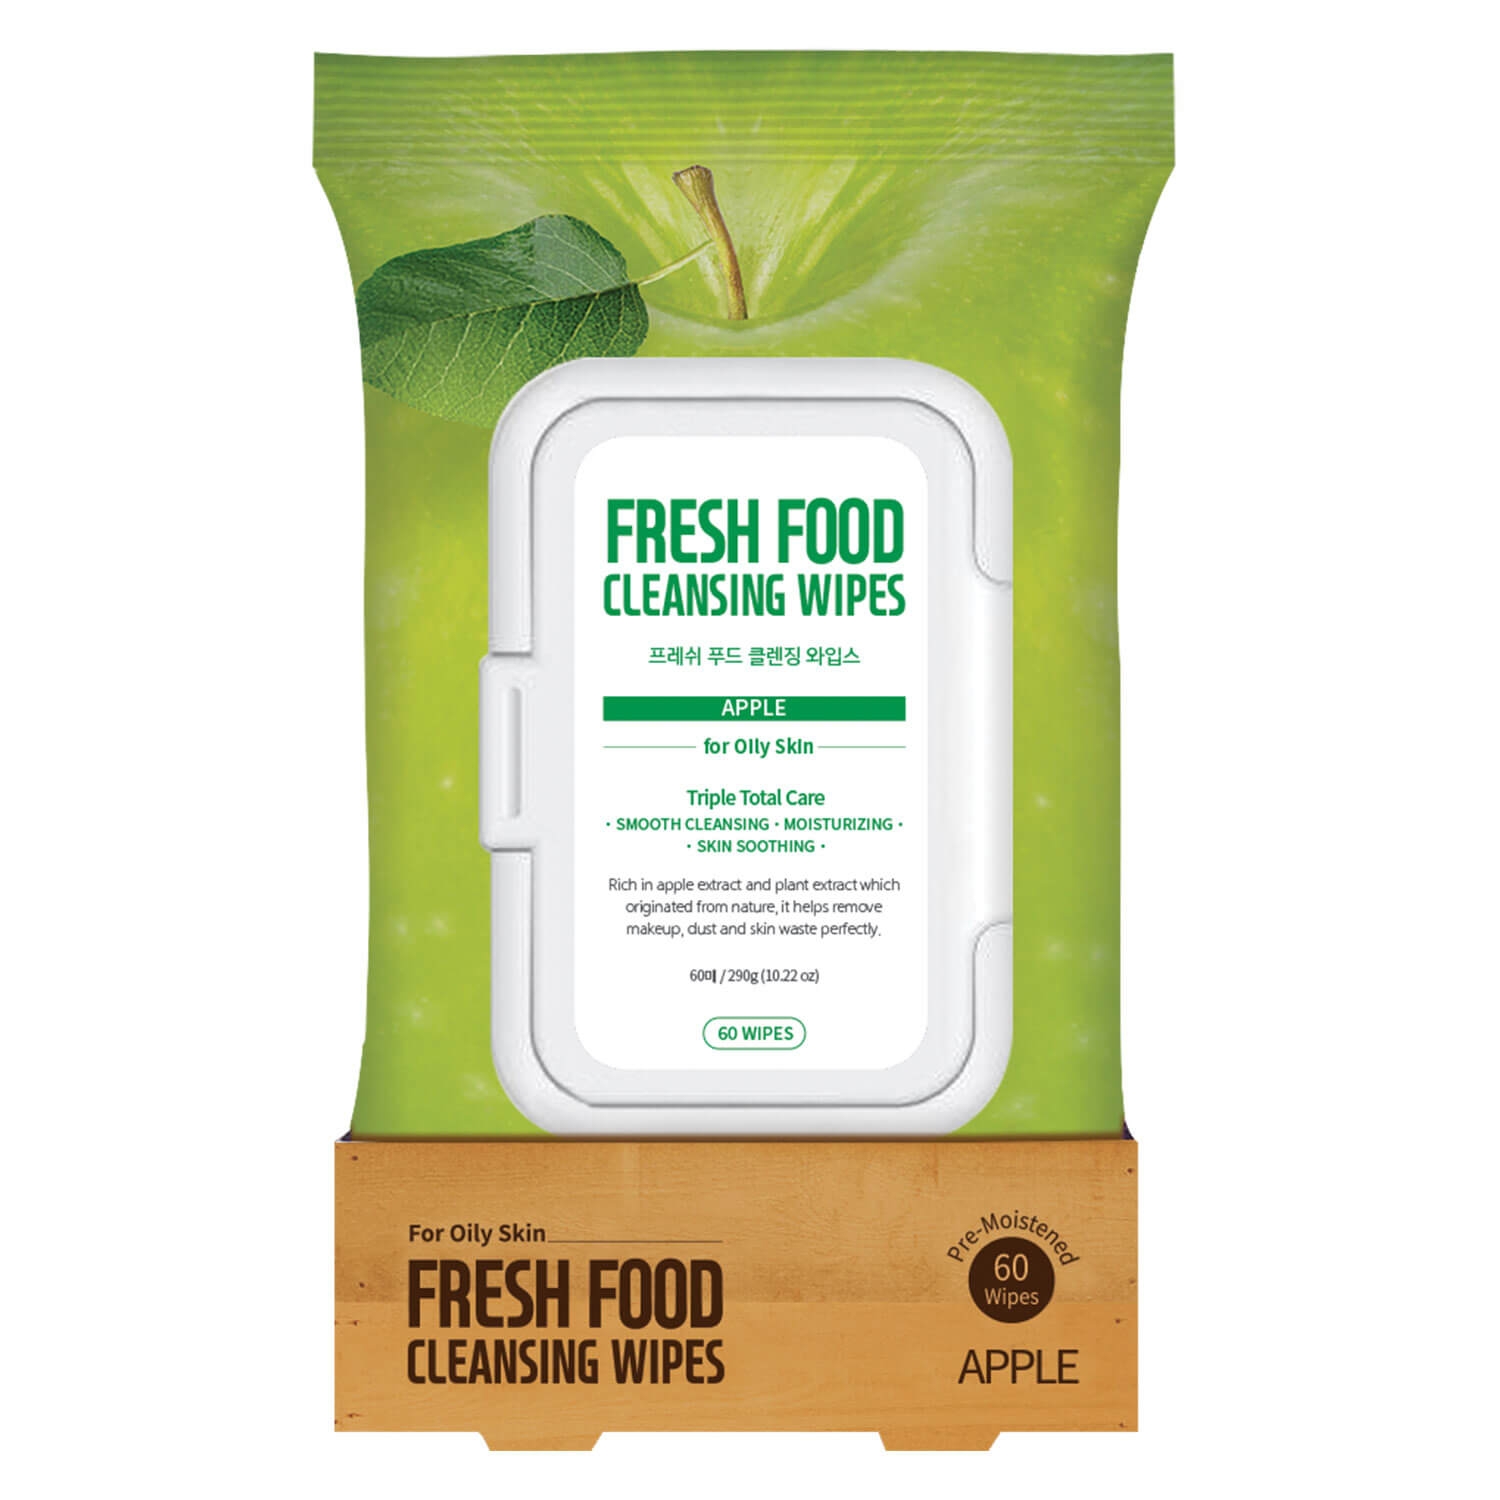 Produktbild von Fresh Food - Cleansing Wipes Apple